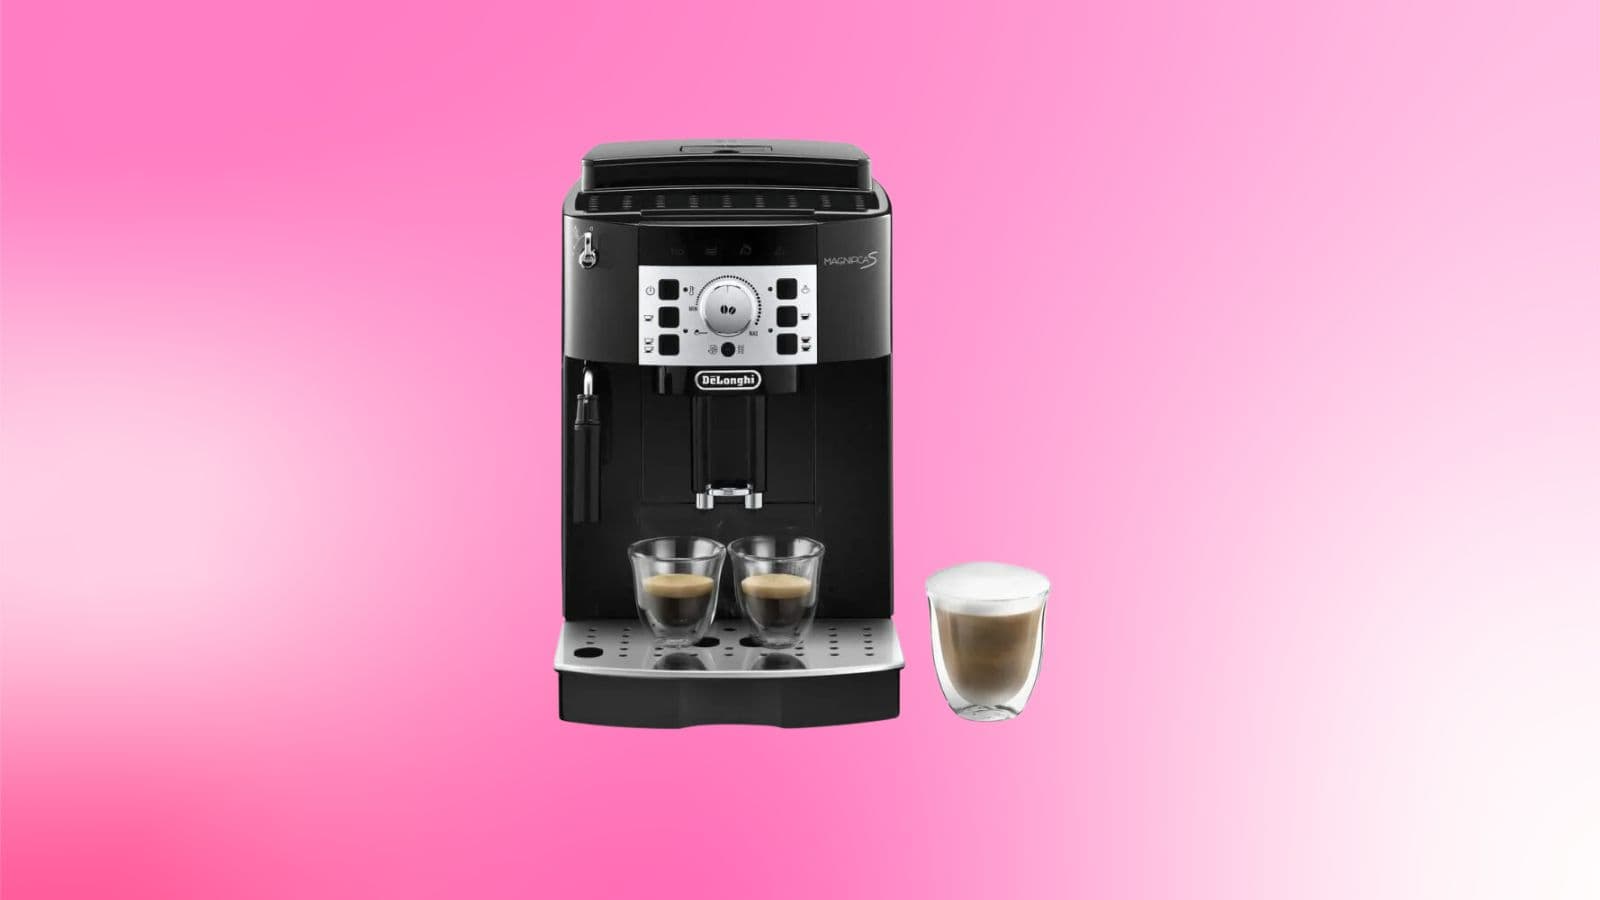 moins de 300 euros pour cette machine à café à grain d'une très grande marque